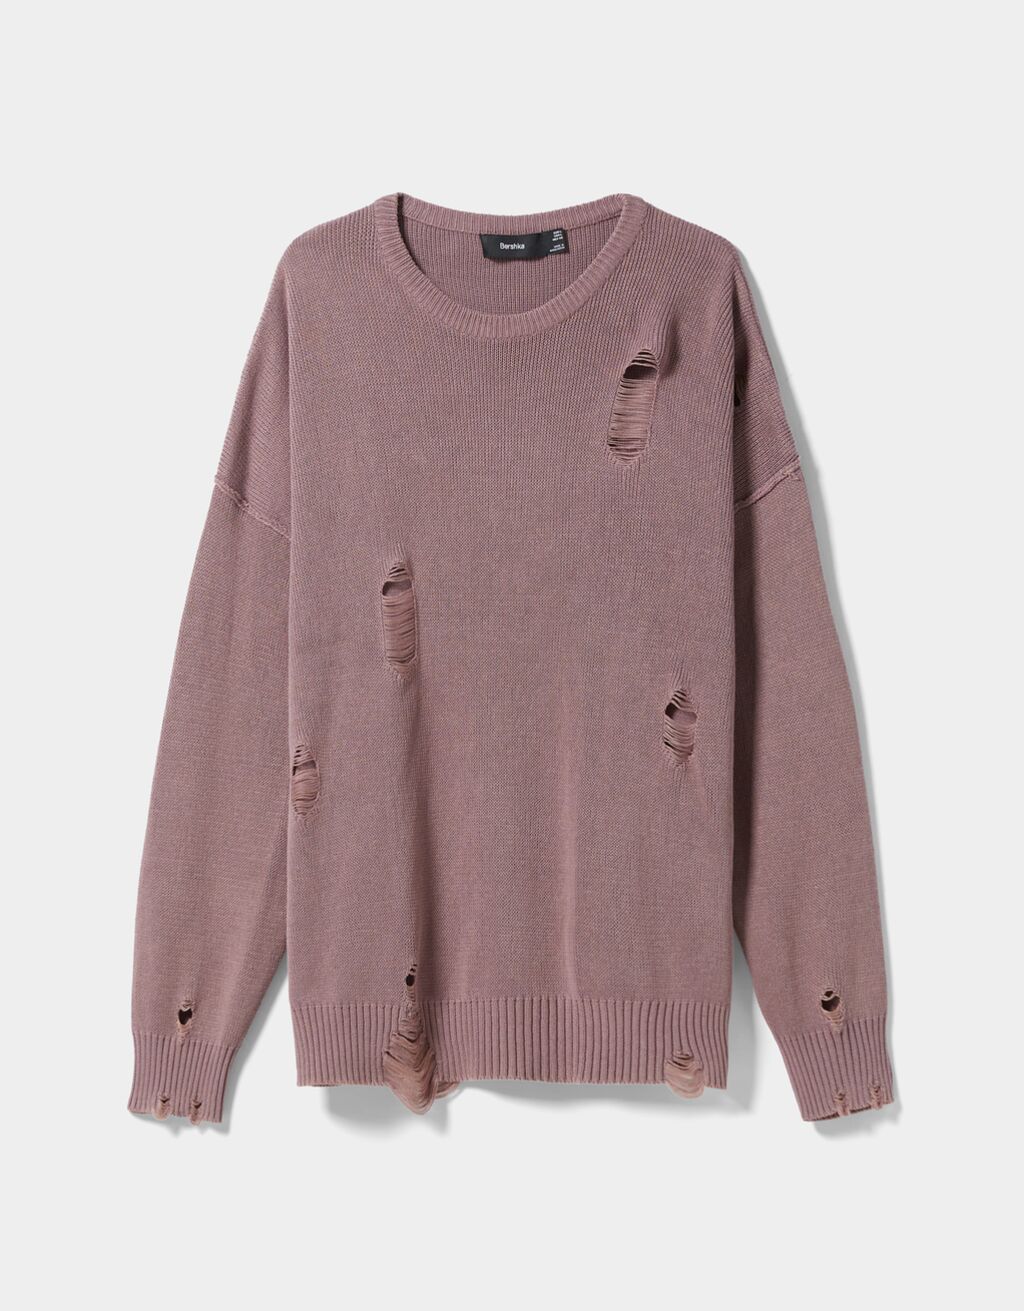 Sweater com rasgões e efeito lavado